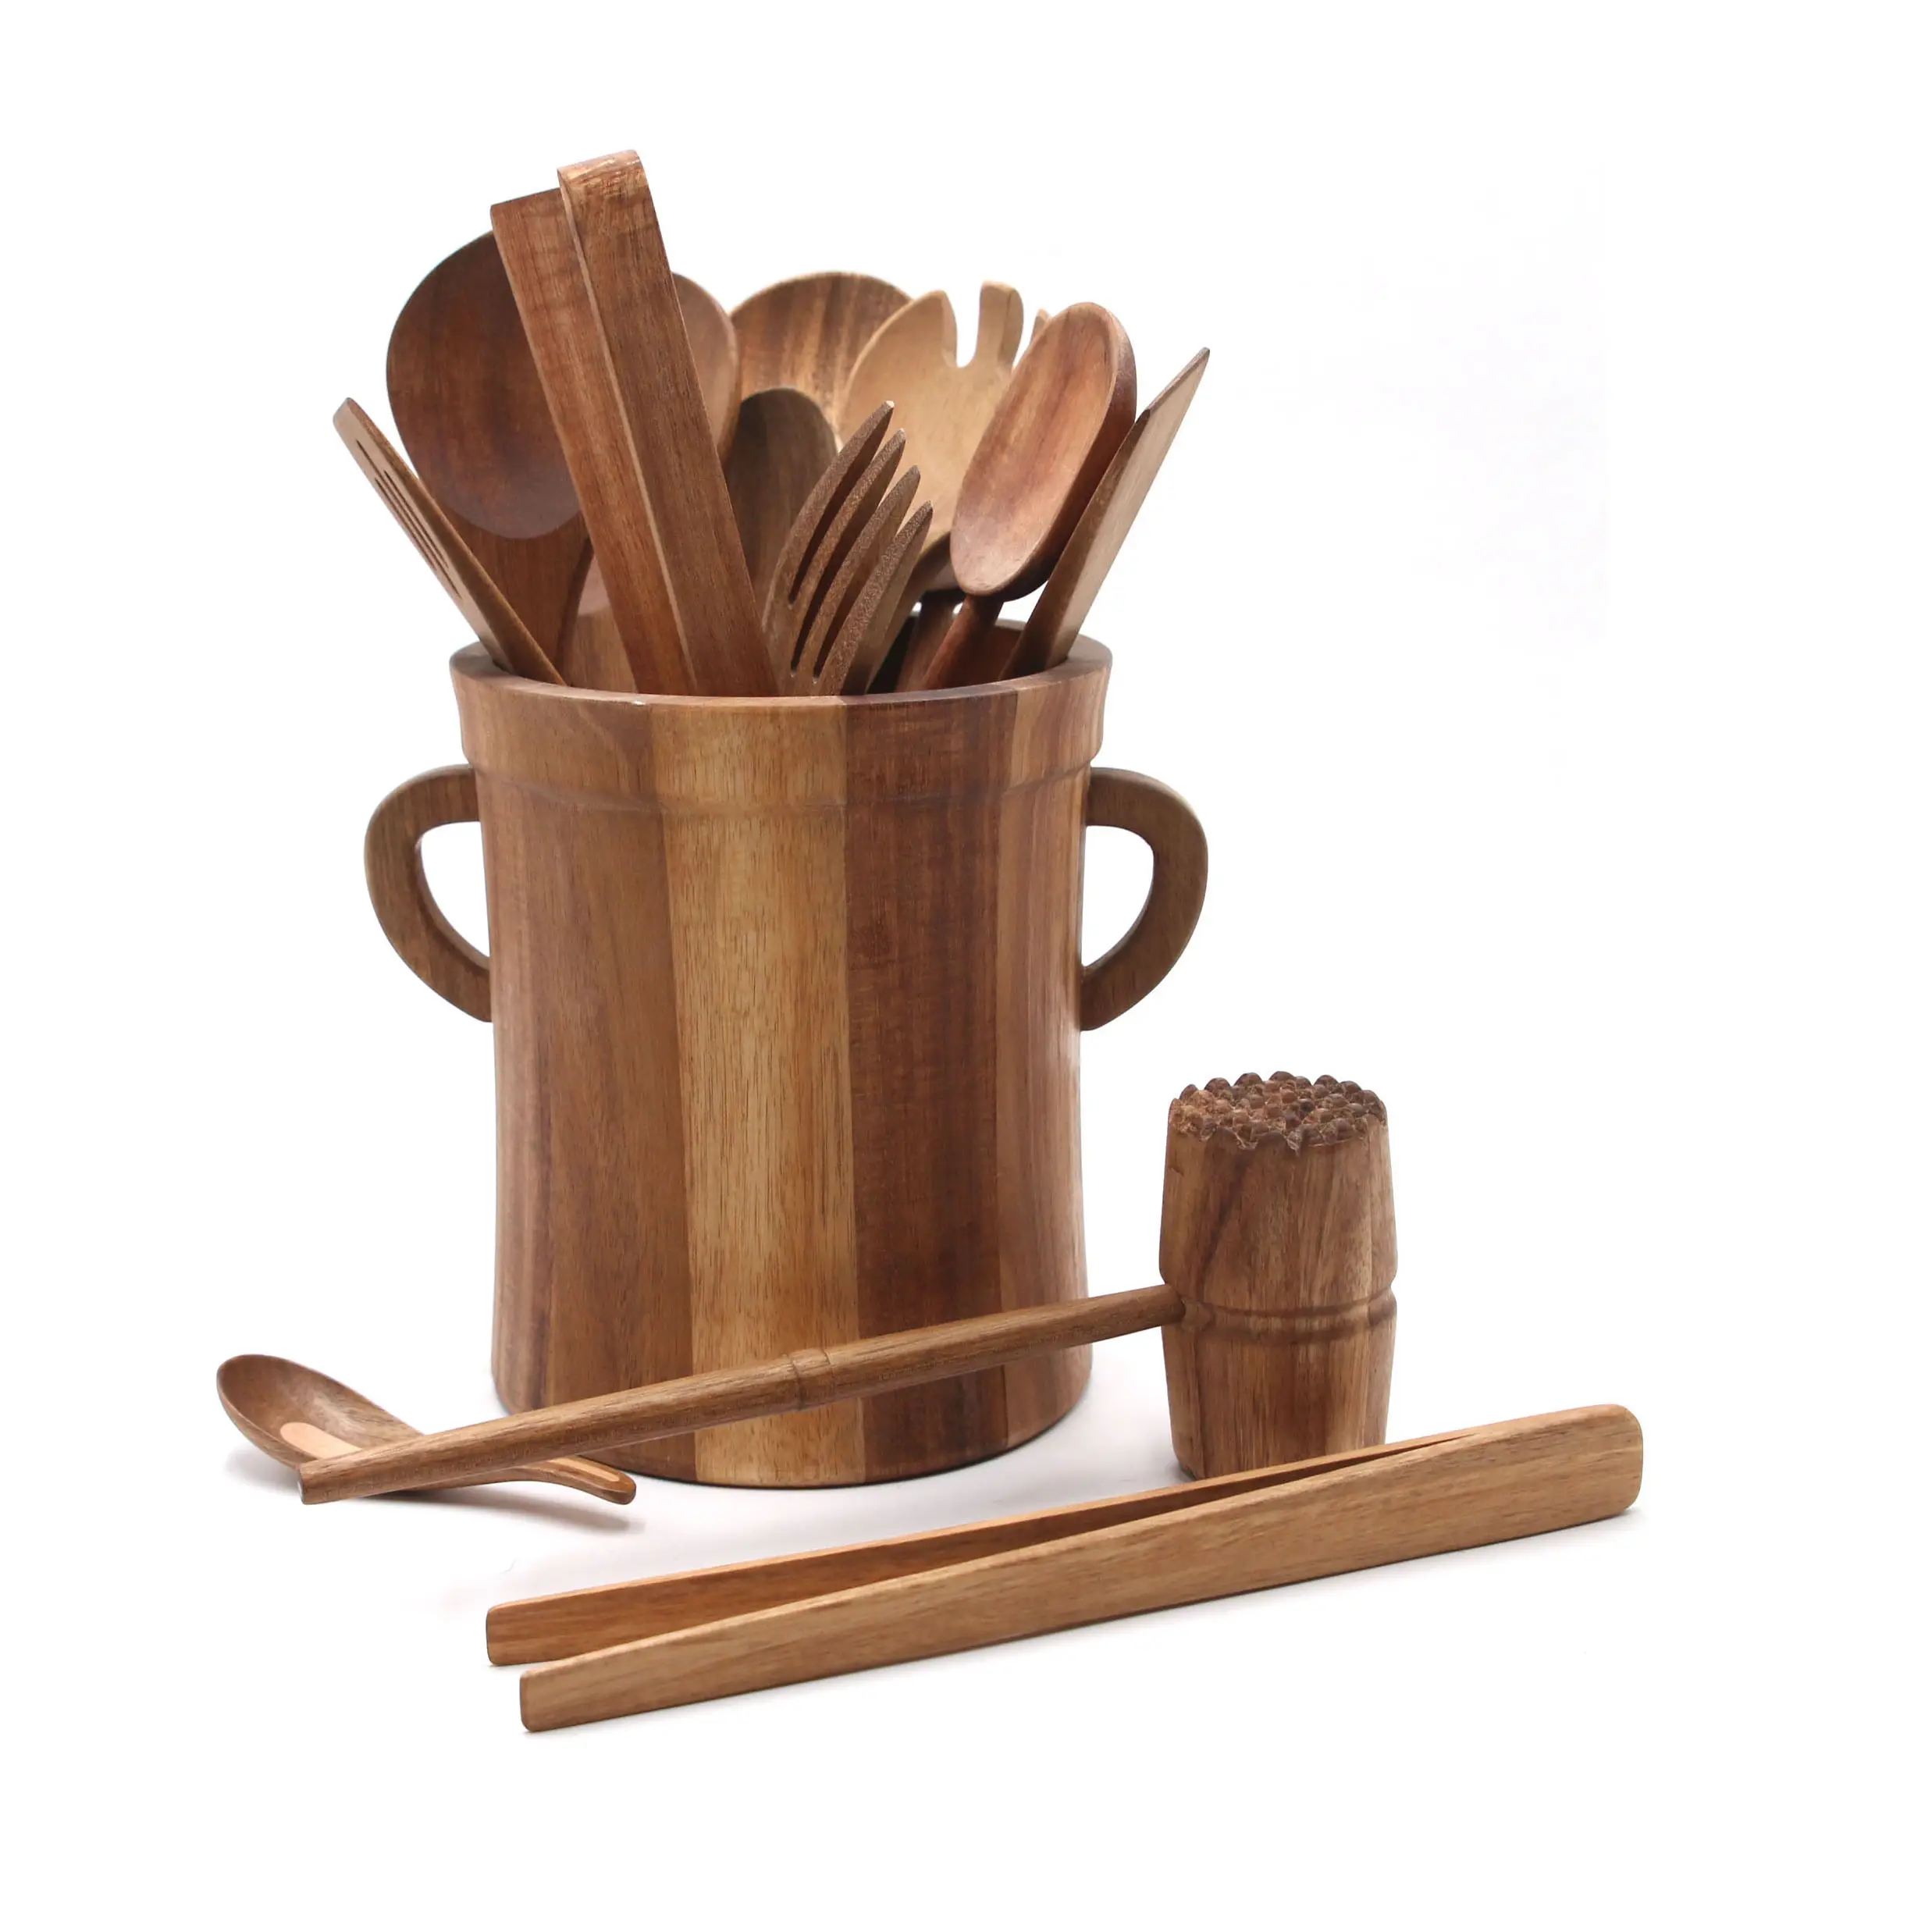 Accesorios de cocina Cucharas de madera Espátula Juego de utensilios de cocina 10 piezas Juego de utensilios de cocina de madera de acacia antiadherente